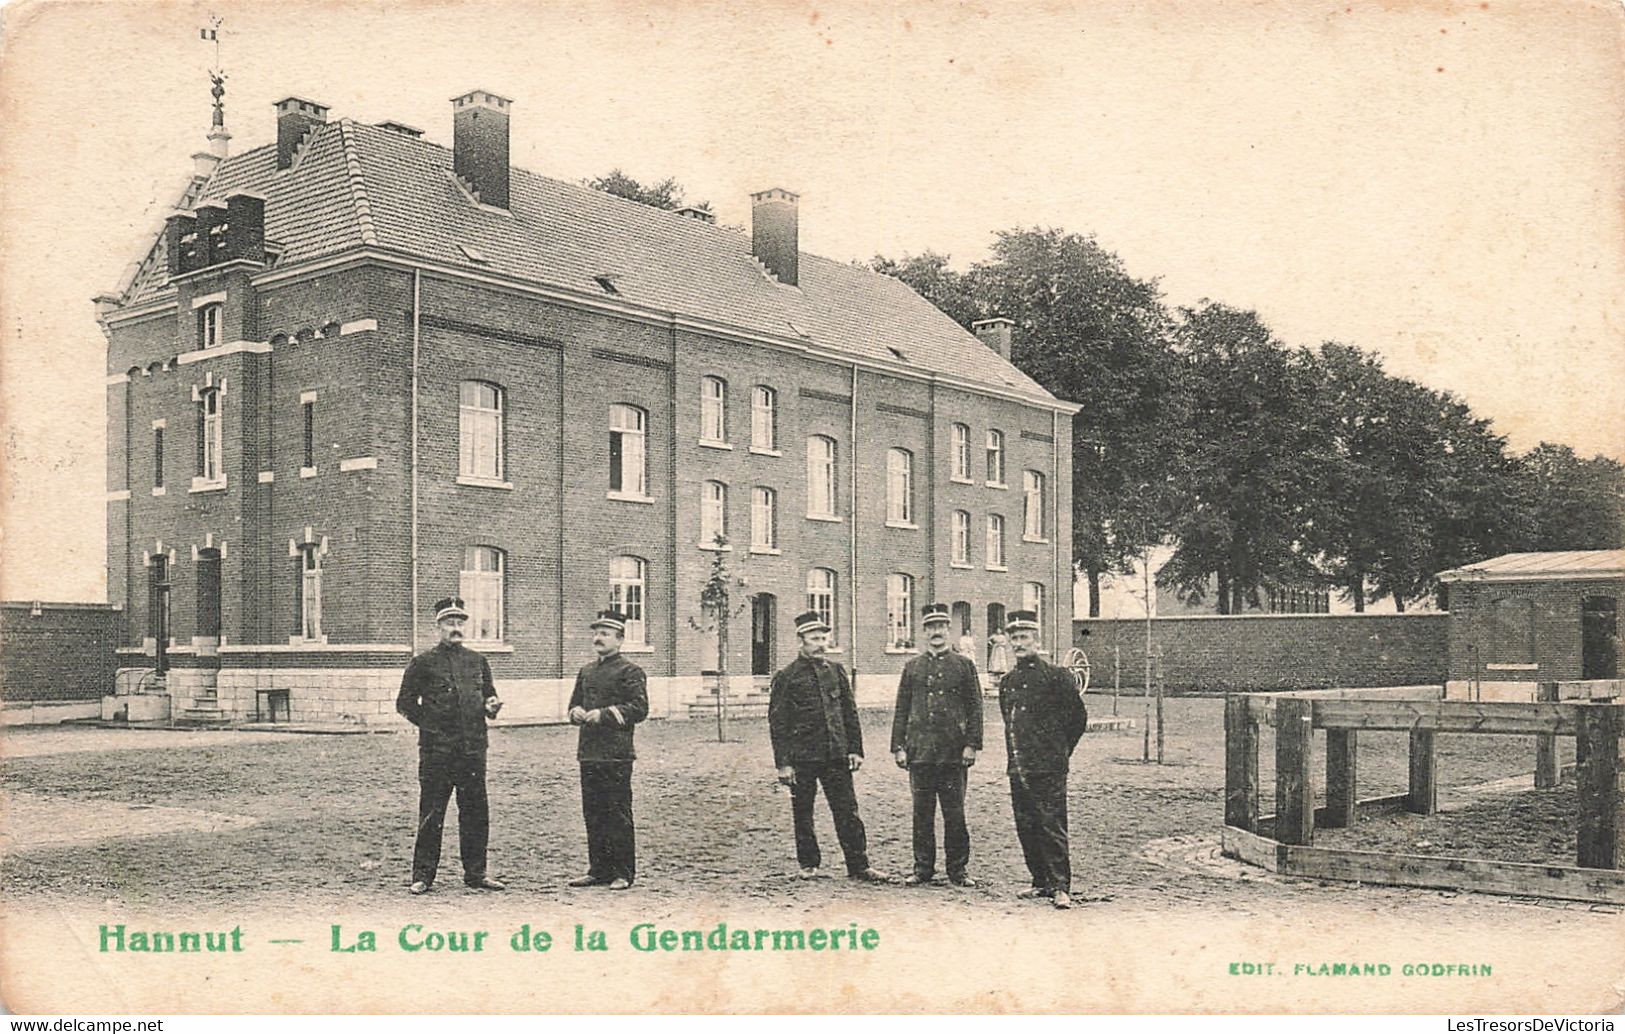 Belgique - La Cour De Gendarmerie - Edit. Flamand Godfrin - Précurseur - Animé - Carte Postale Ancienne - Hannut